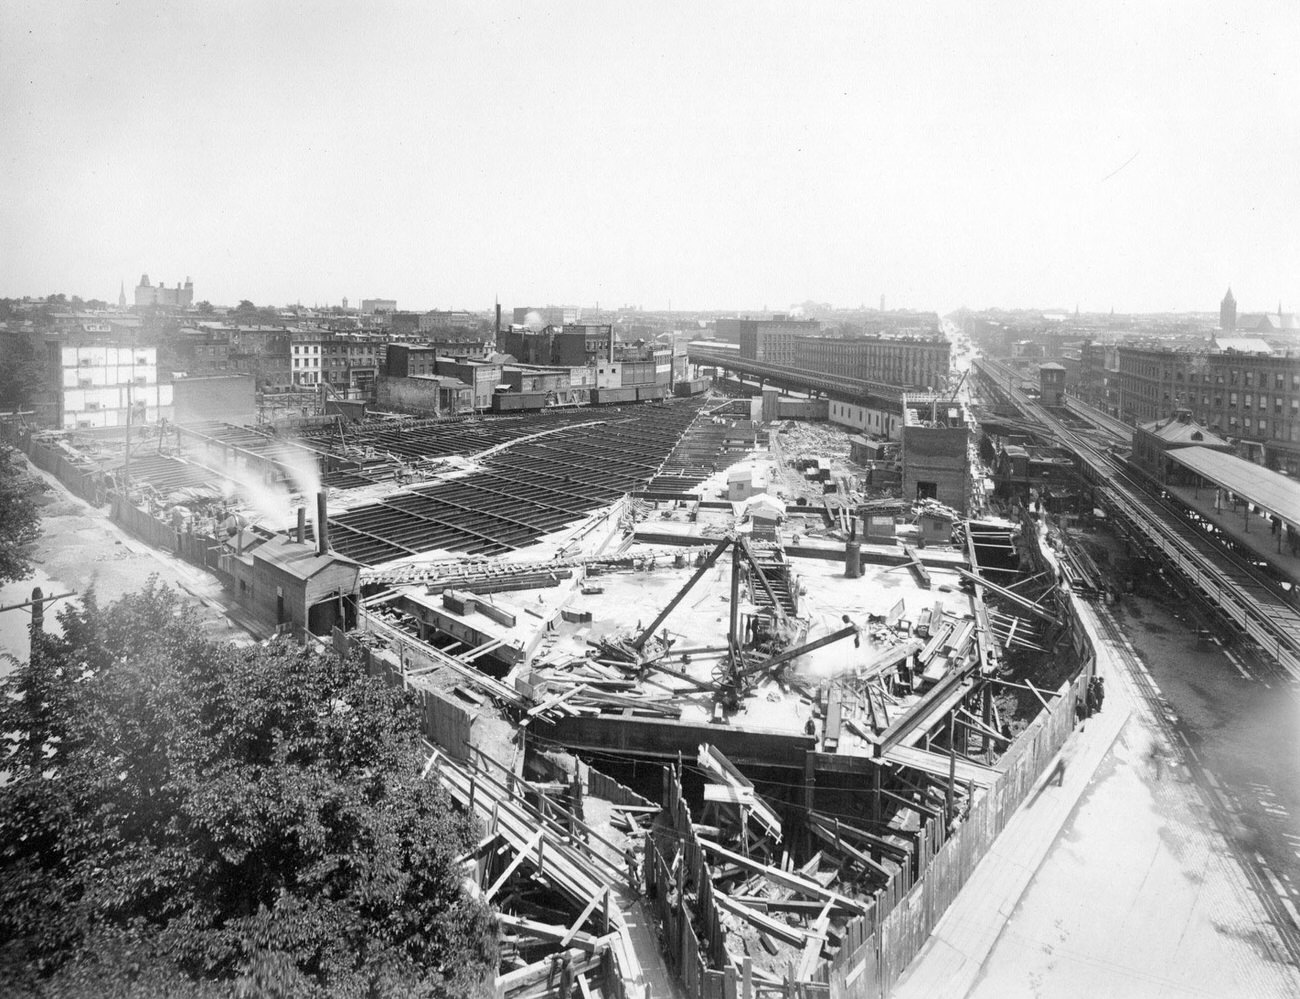 Flatbush Avenue Lirr (Long Island Railroad) Station Under Construction, Brooklyn, 1895